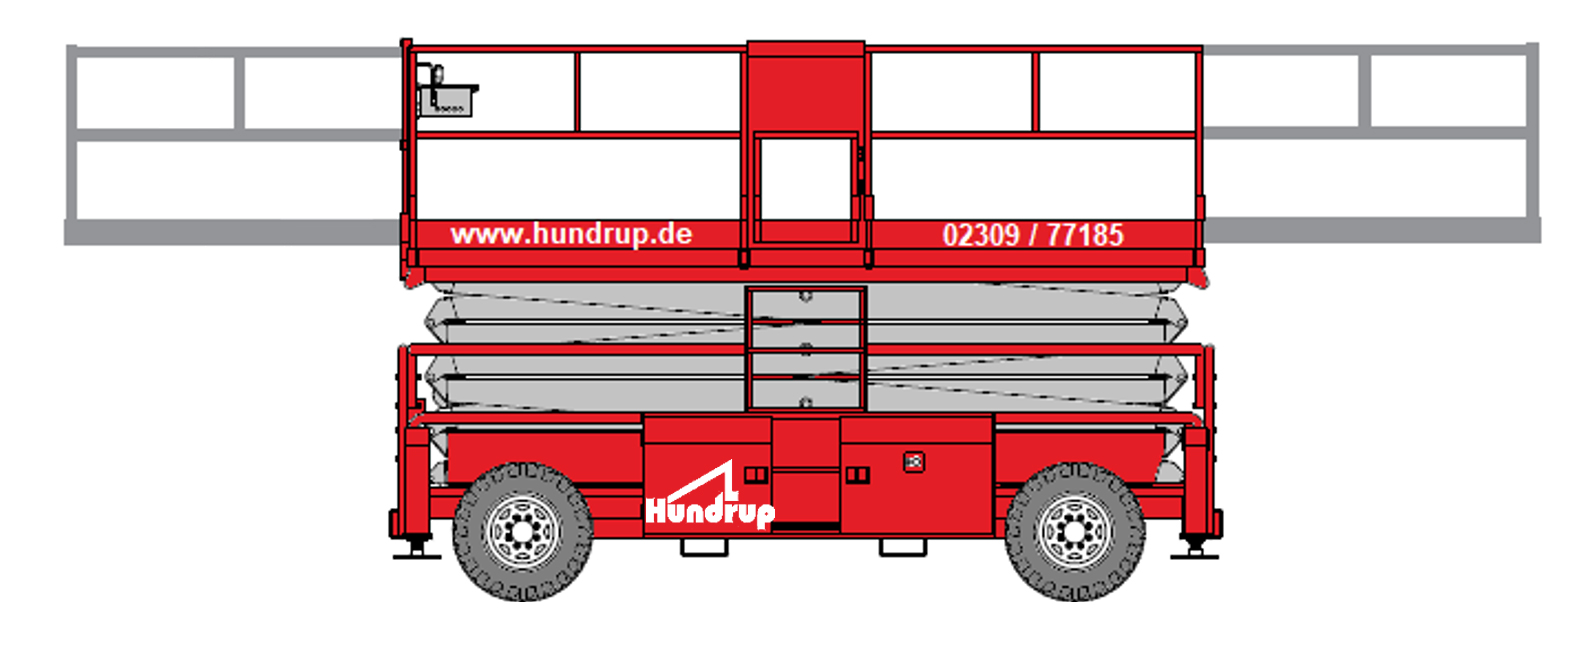 Scherenbuehnen-Personenlifte SJ9250RT für Ihre individuellen Einsatzzwecke